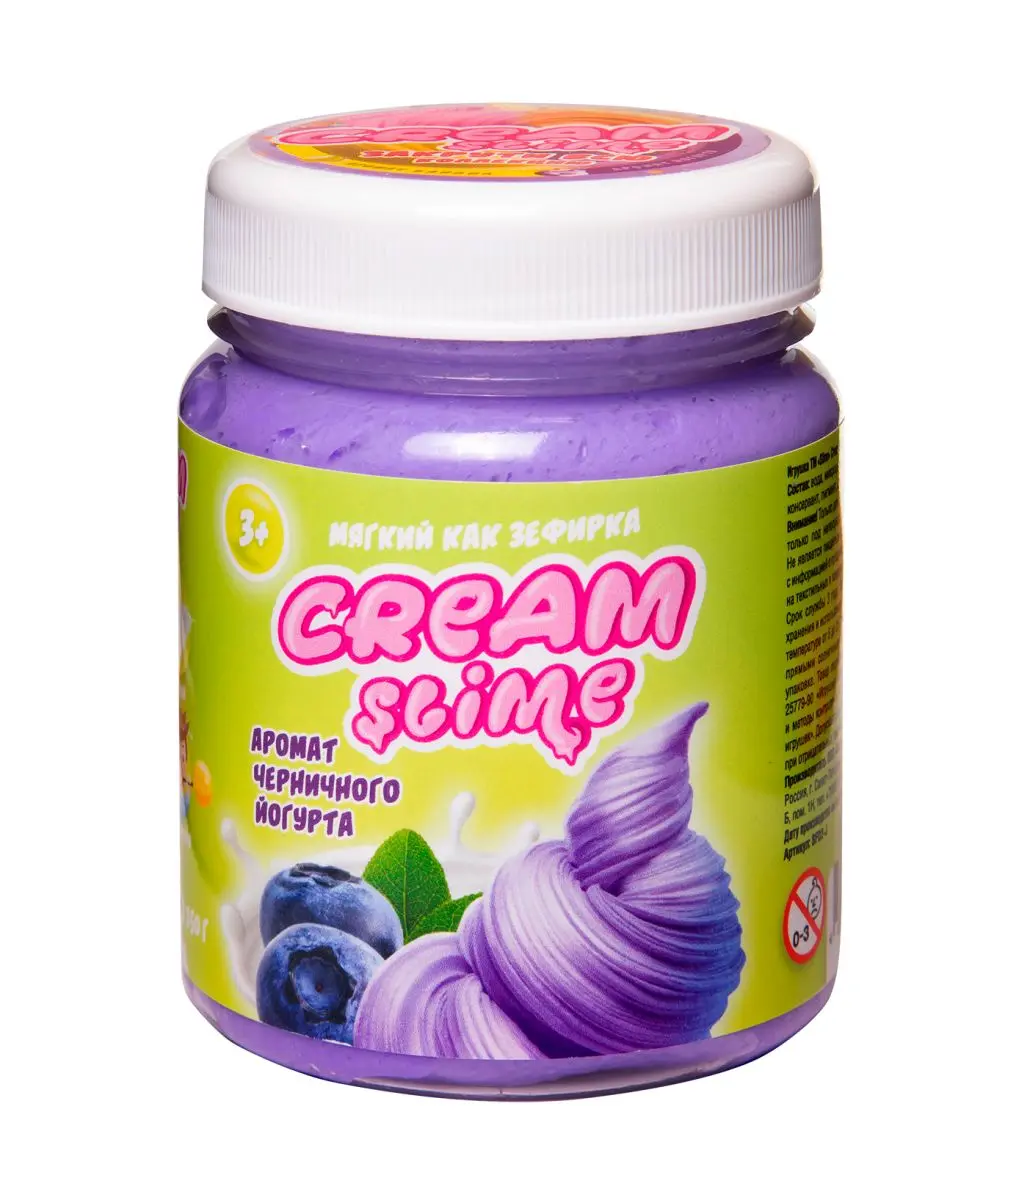 Cream-Slime с ароматом черничного йогурта - фото